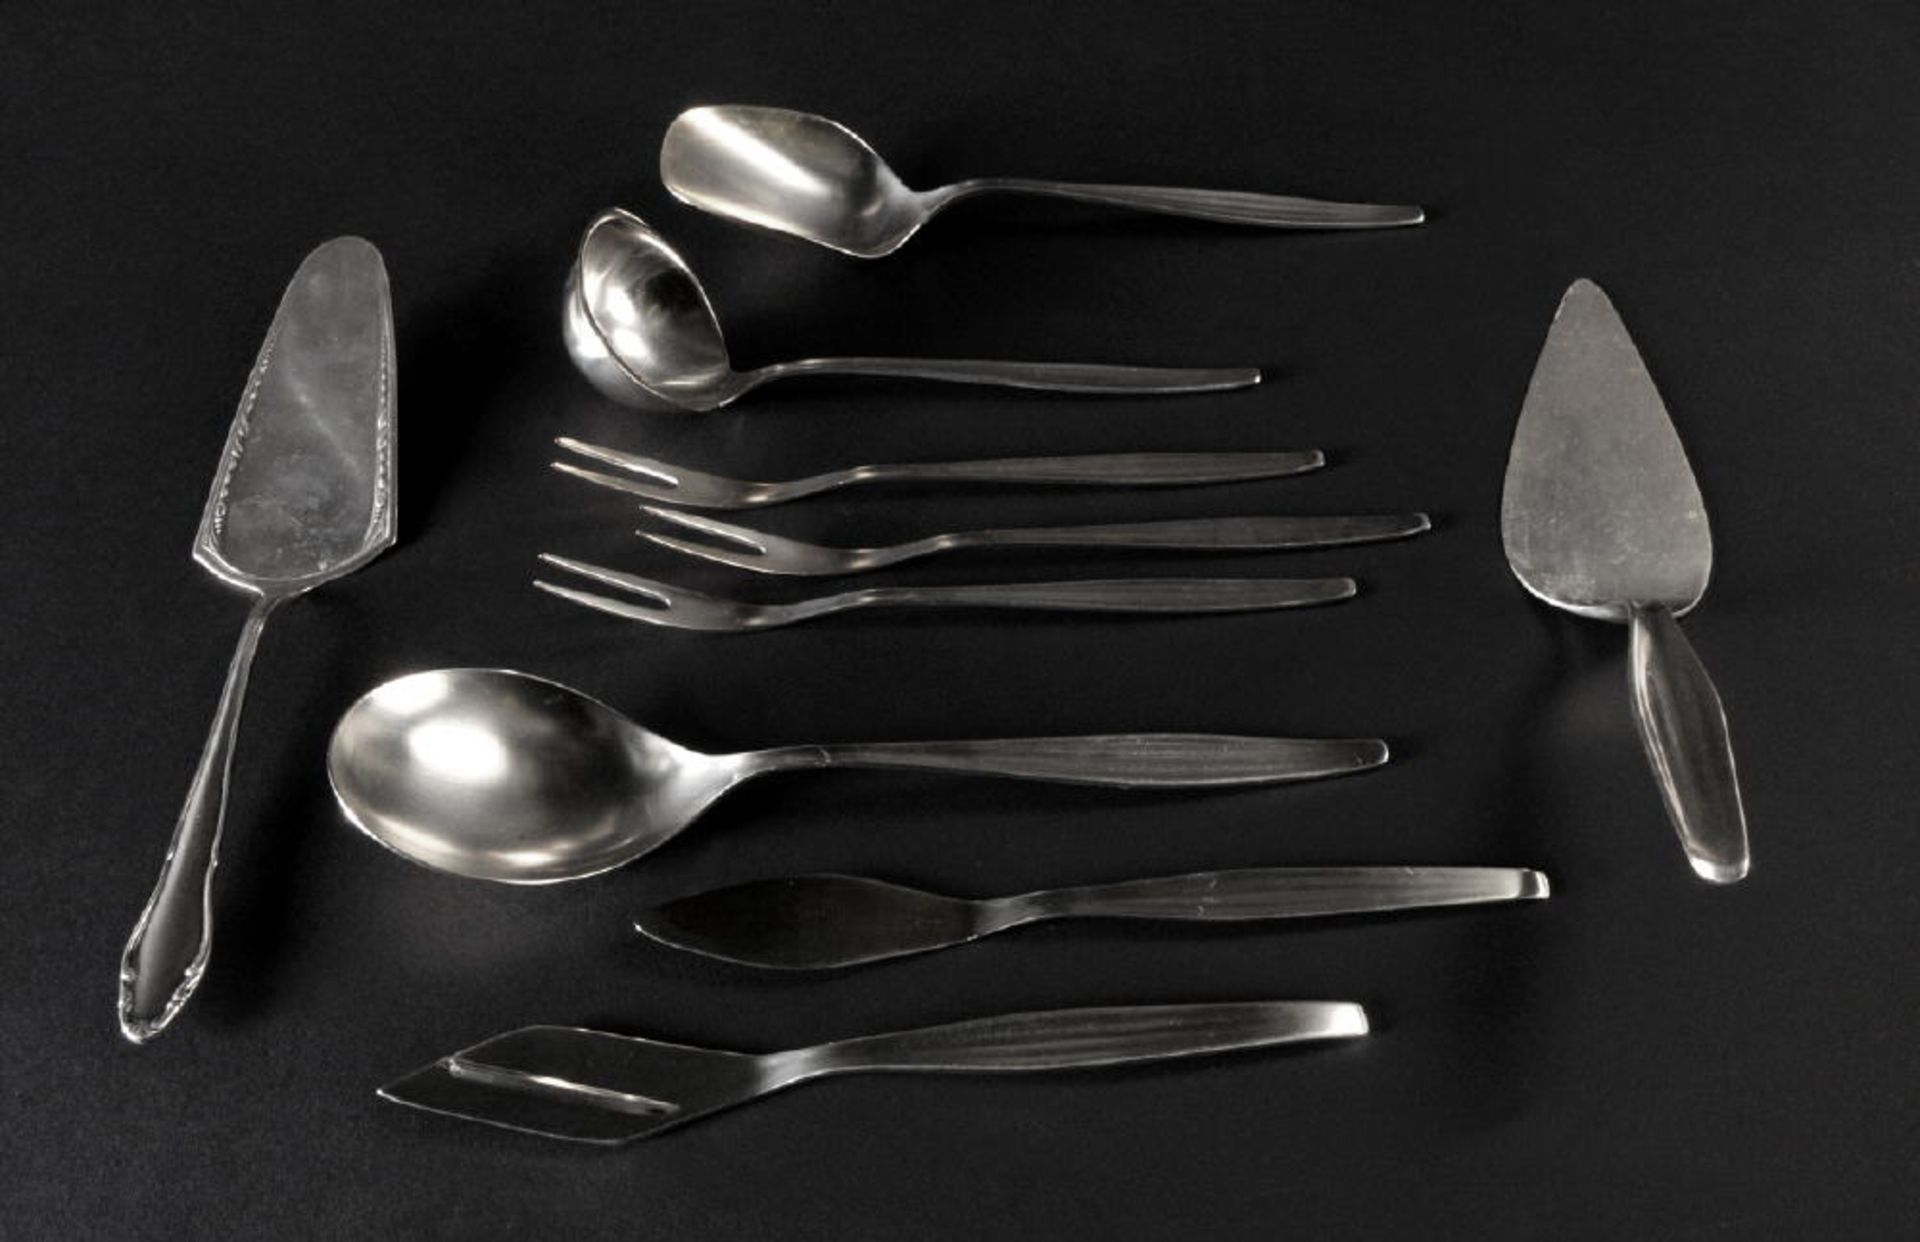 Vorlegeteile, 10 Stück "WMF"800/925 Silber, 550 g, u.a. Kuchenheber, Fleischgabeln, Servierlöffel